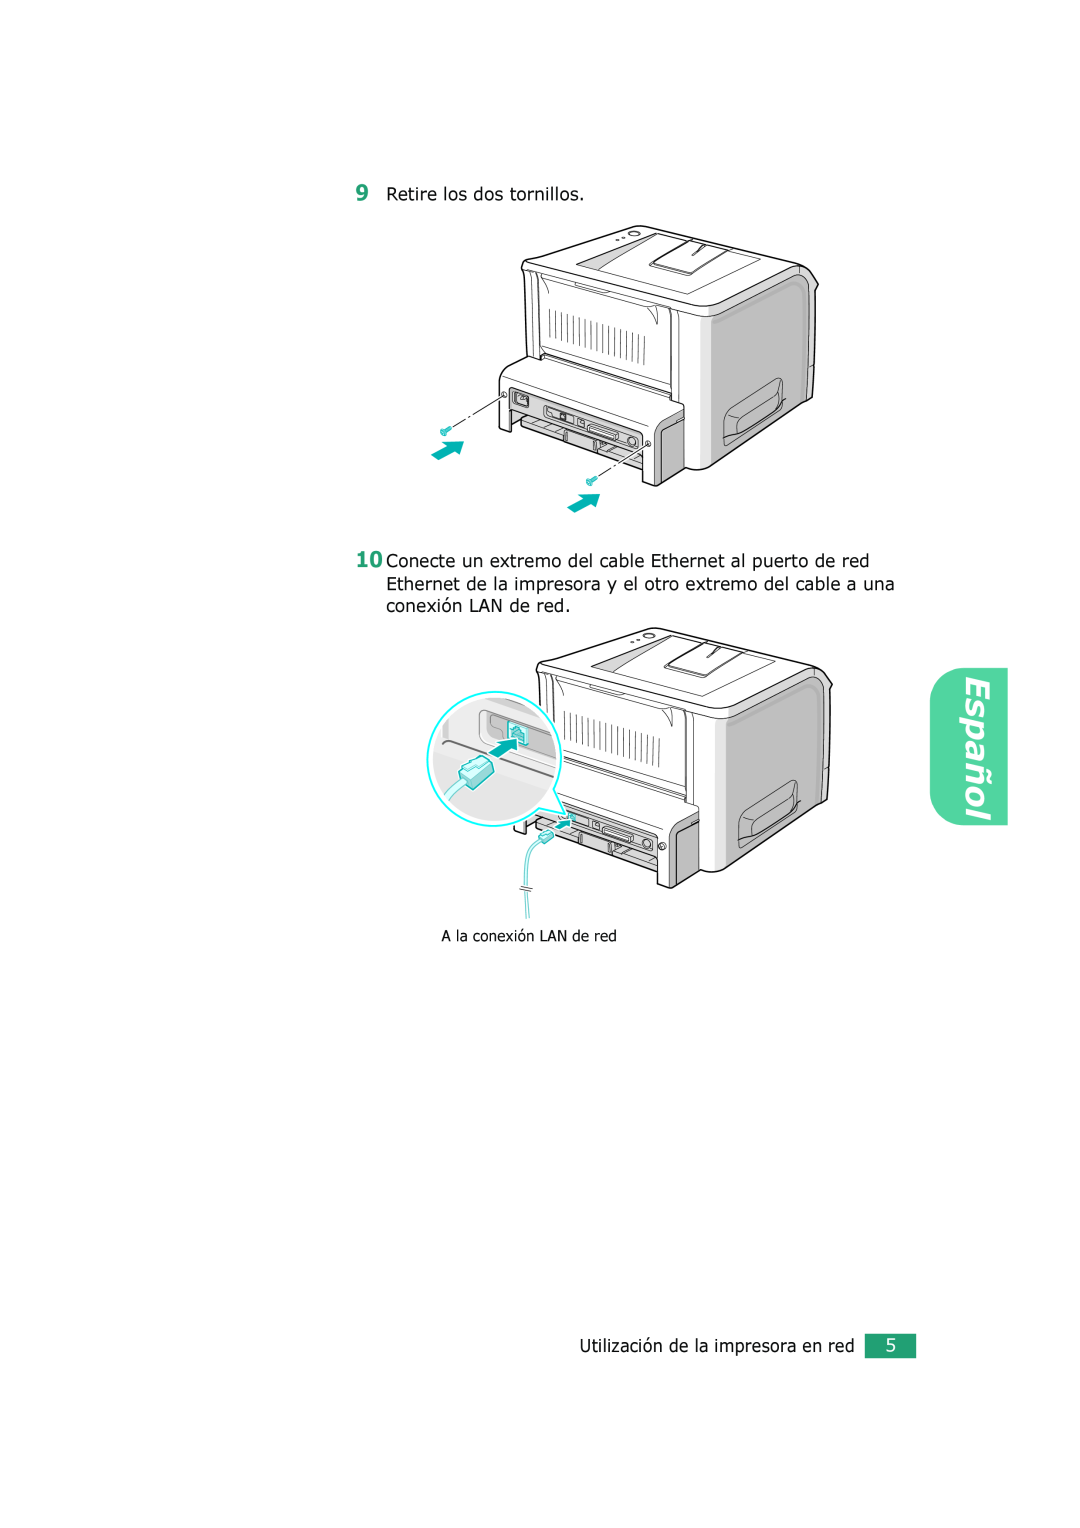 Xerox 3150 manual Retire los dos tornillos, A la conexión LAN de red, Español, Utilización de la impresora en red 